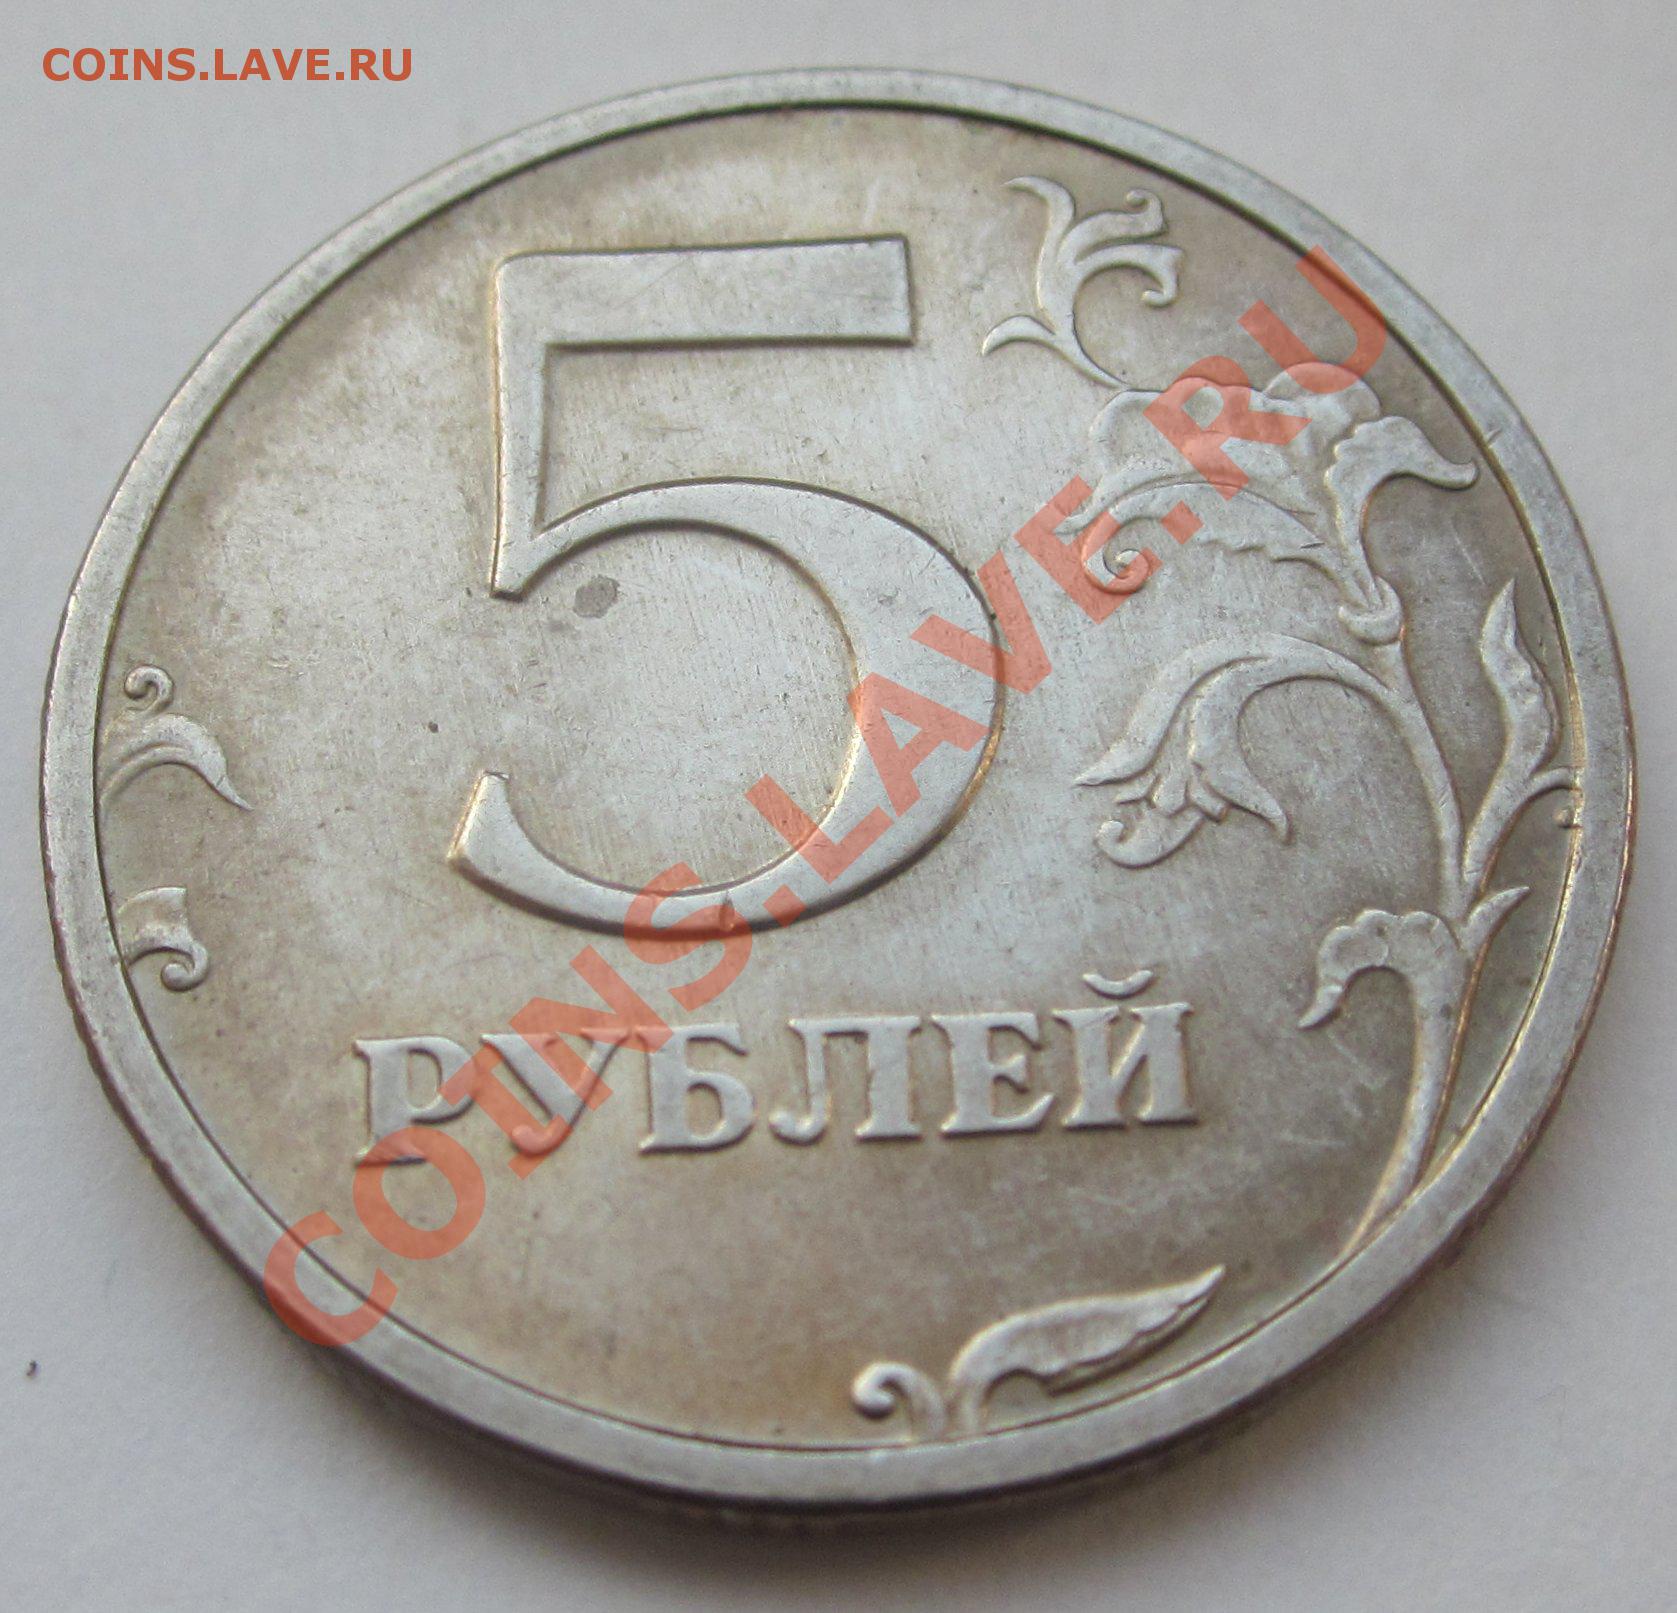 Продаются за 5 рублей. 5 Рублей 1997 года ММД разновидности. 5 Рублей 1997 года цена стоимость монеты разновидности.